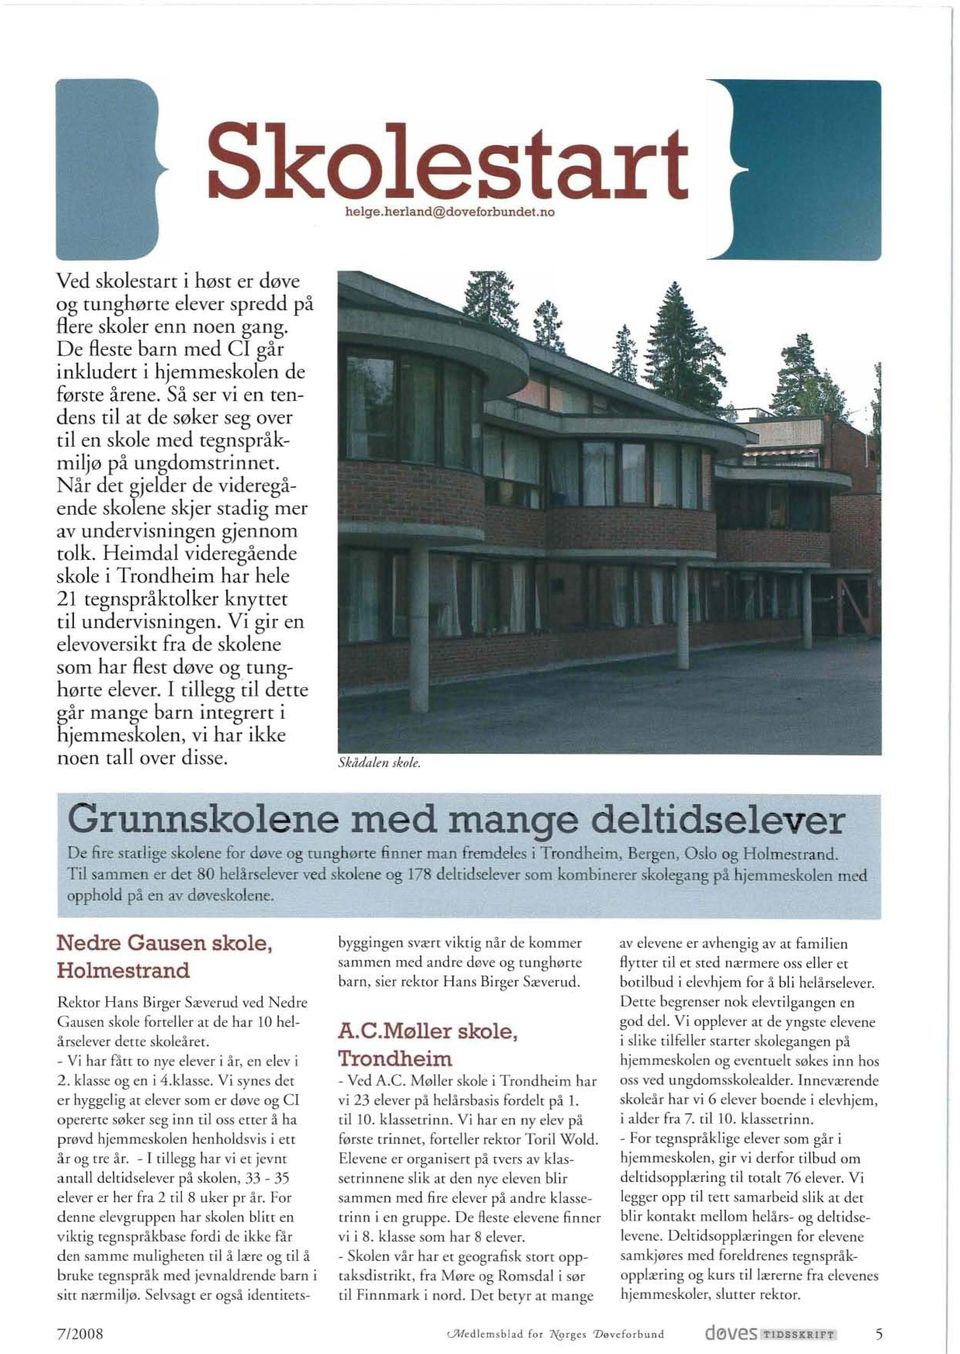 Heimdal videregående skole i Trondheim har hele 21 tegnspråktolker knyttet til undervisningen. Vi gir en elevoversikt fra de skolene som har flest døve OK tunghørte elever.